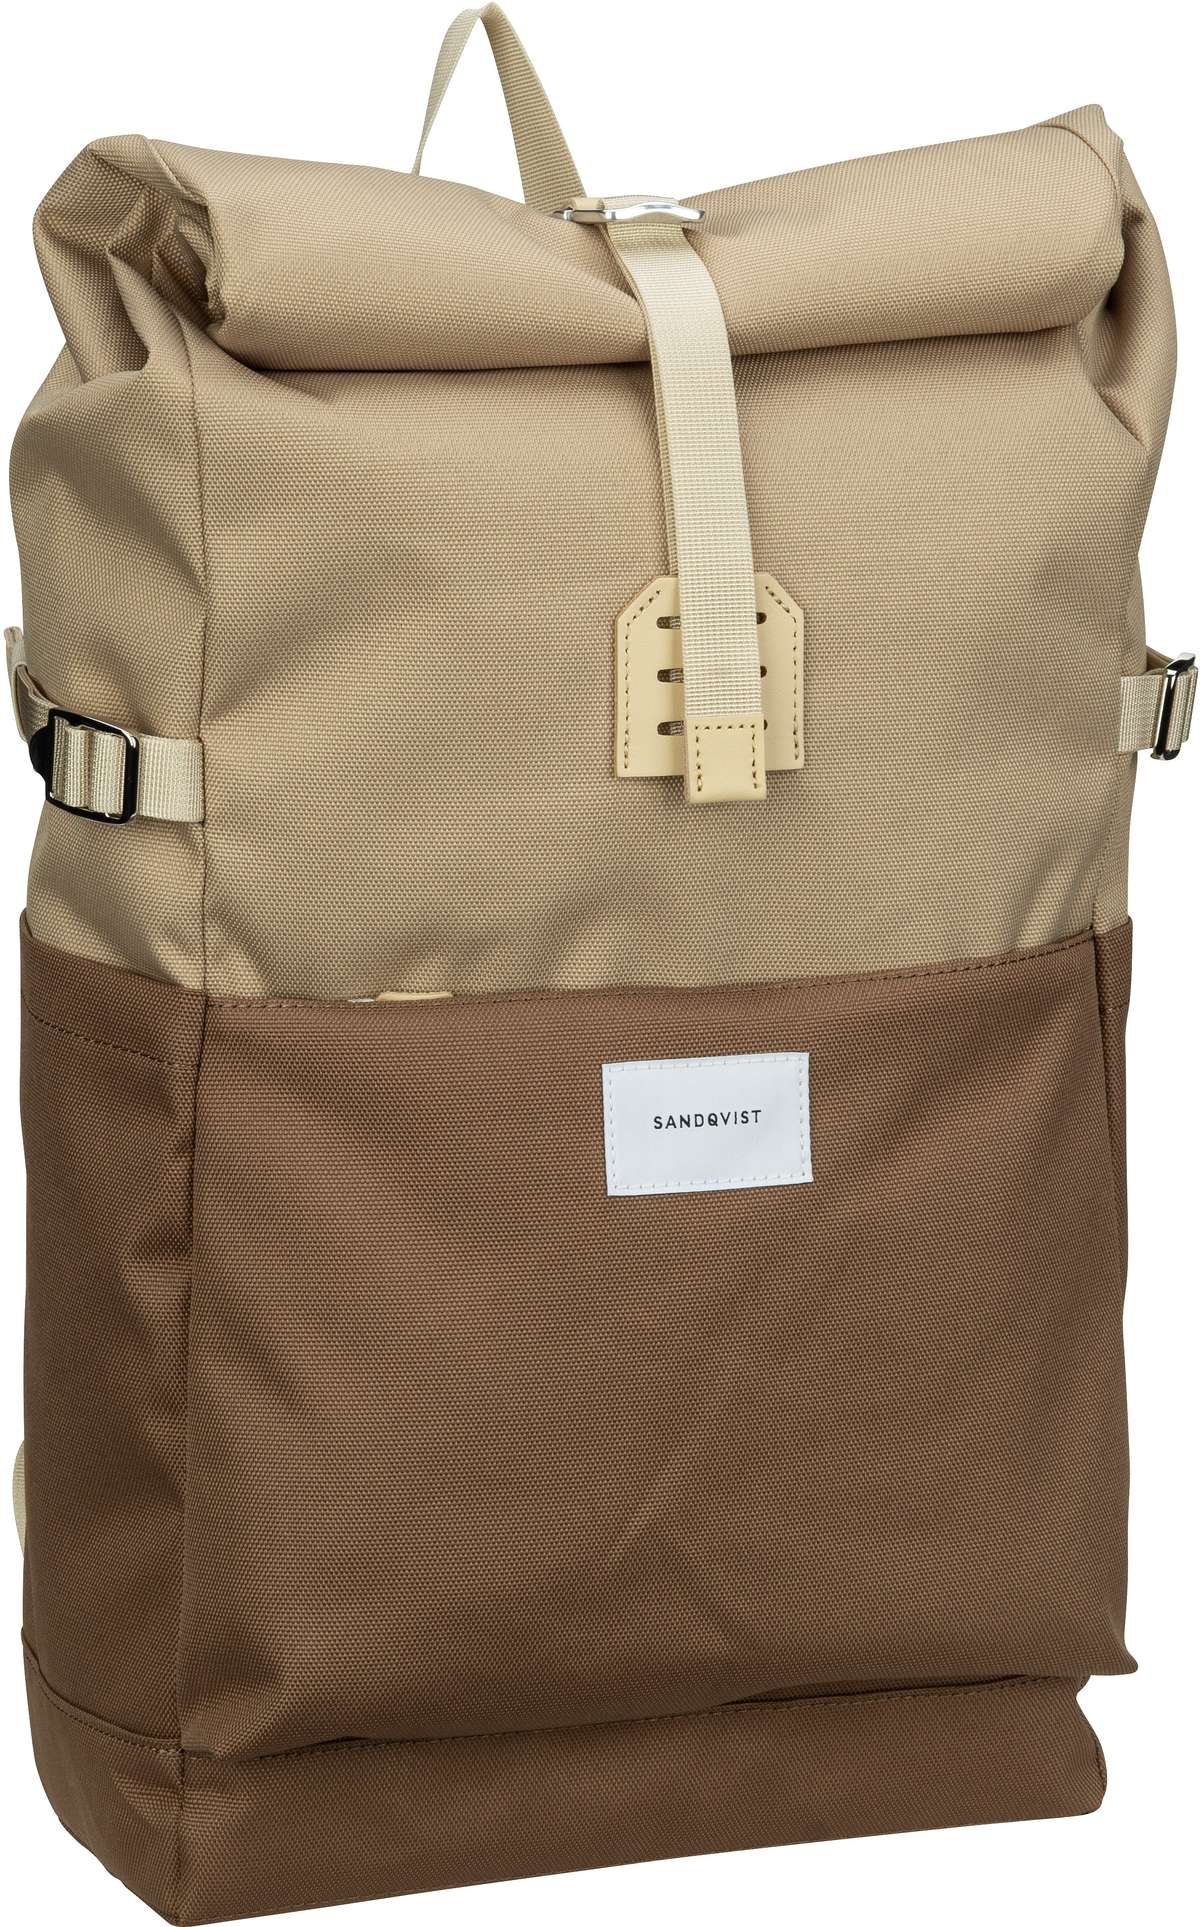 Sandqvist Rucksack Daypack Ilon Rolltop Backpack Multi Brown Natural Leather (11.5 Liter)  - Onlineshop Taschenkaufhaus